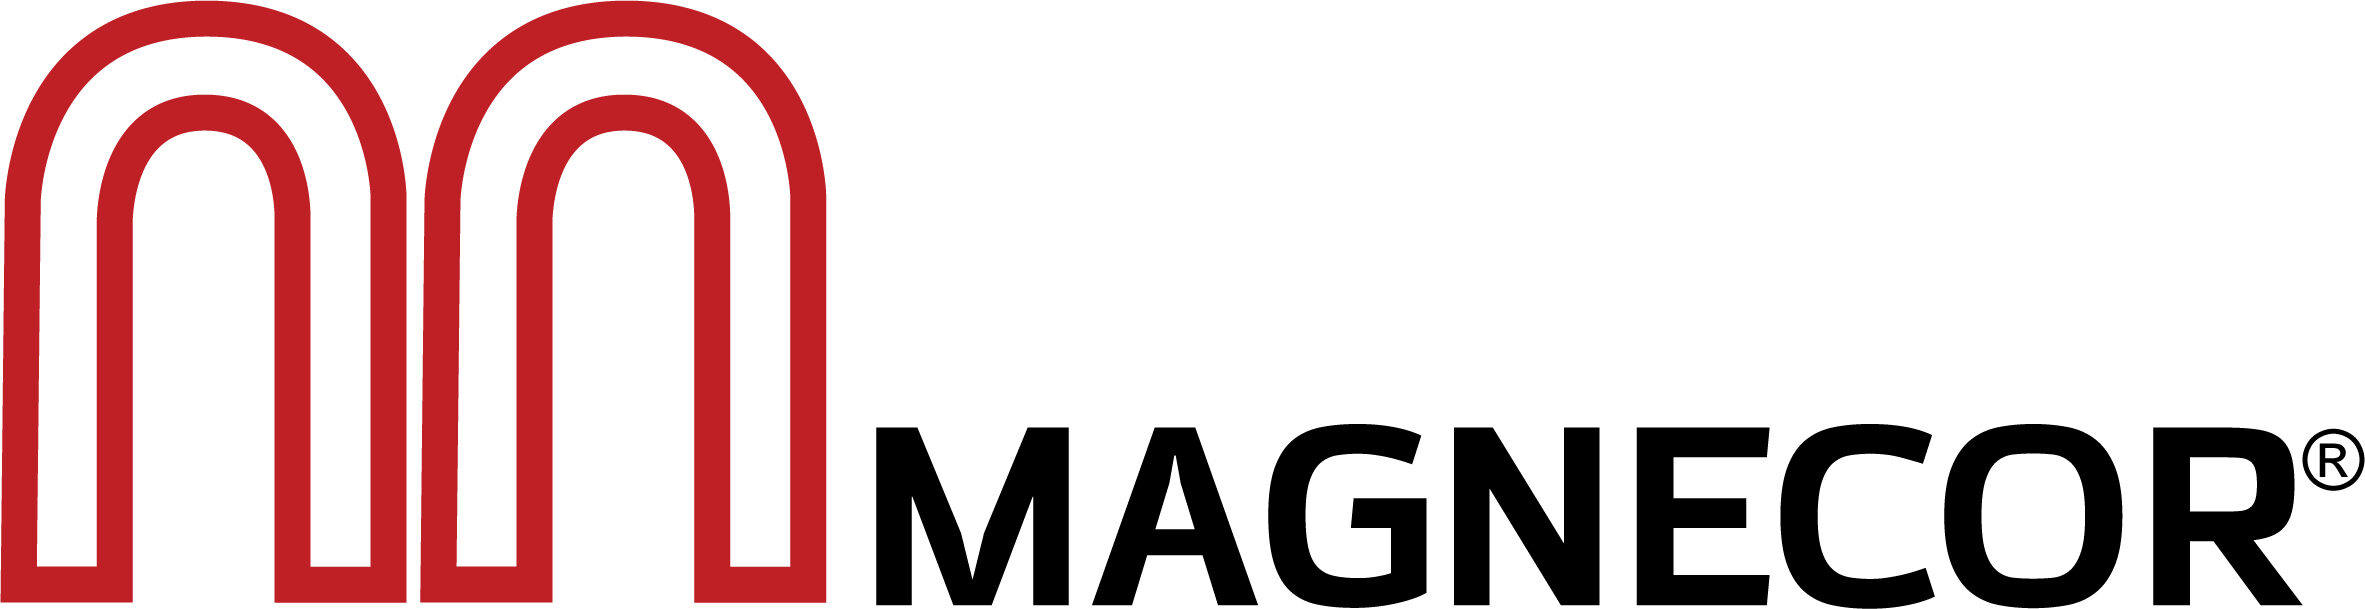 Magnecor USA